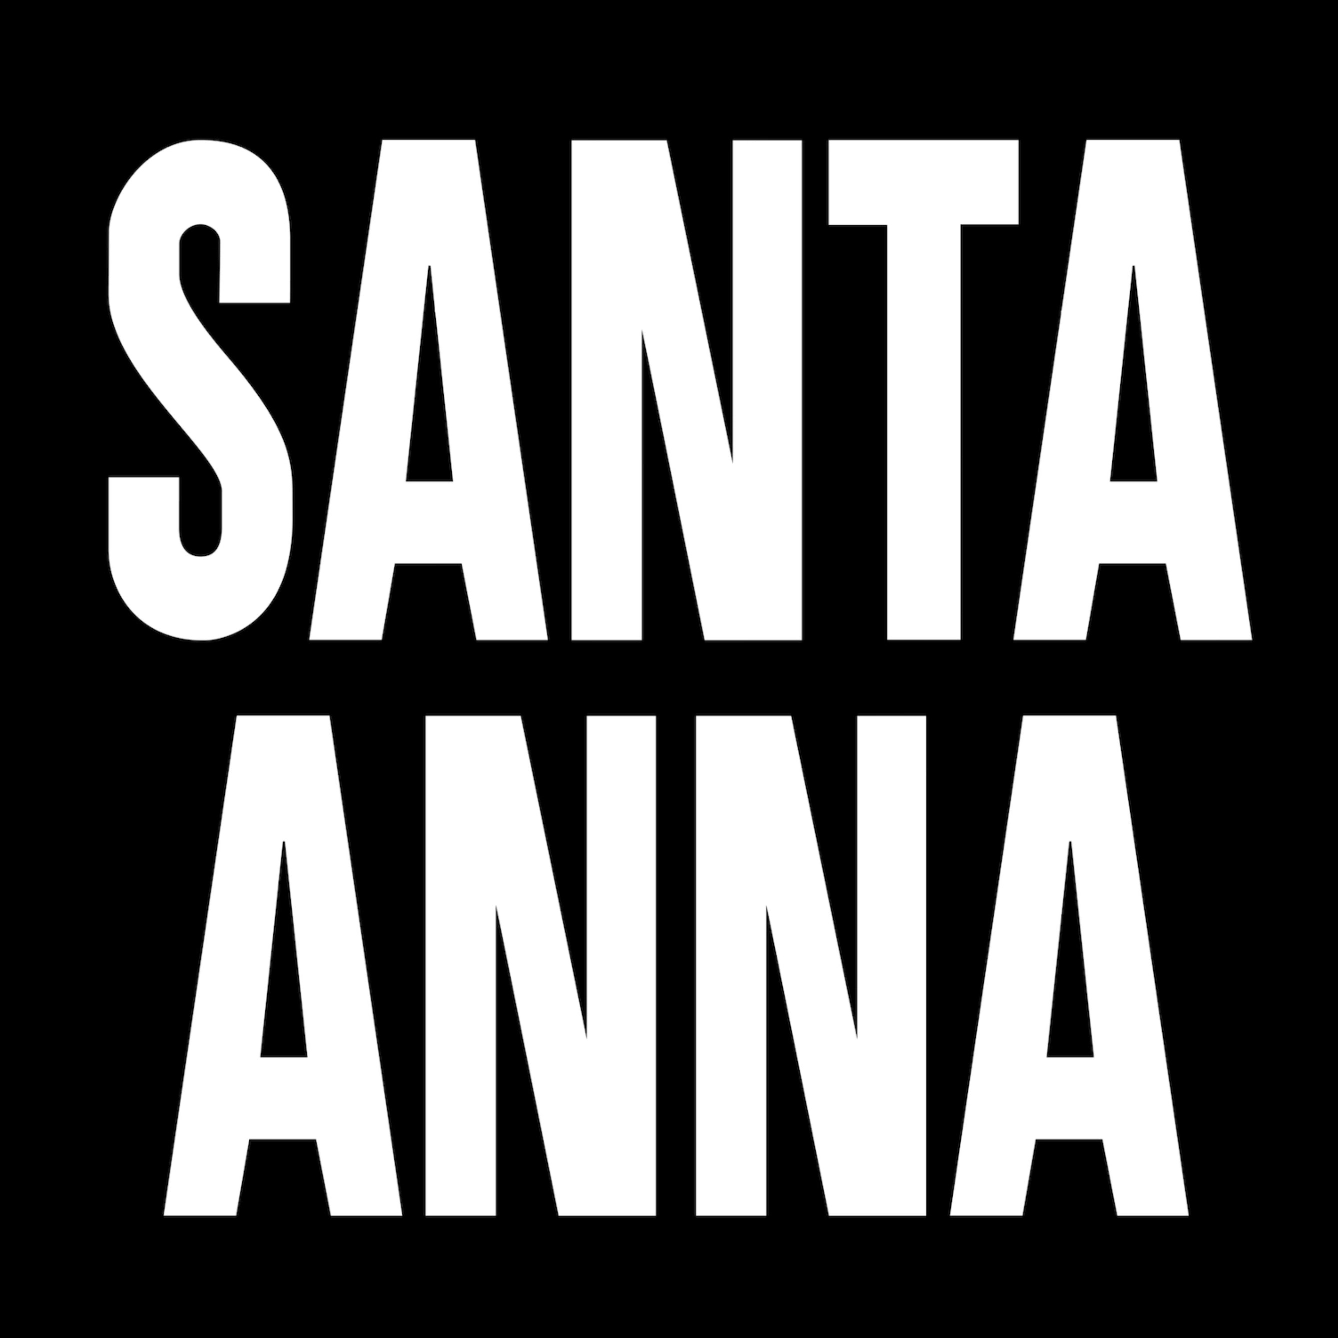 Santa Anna